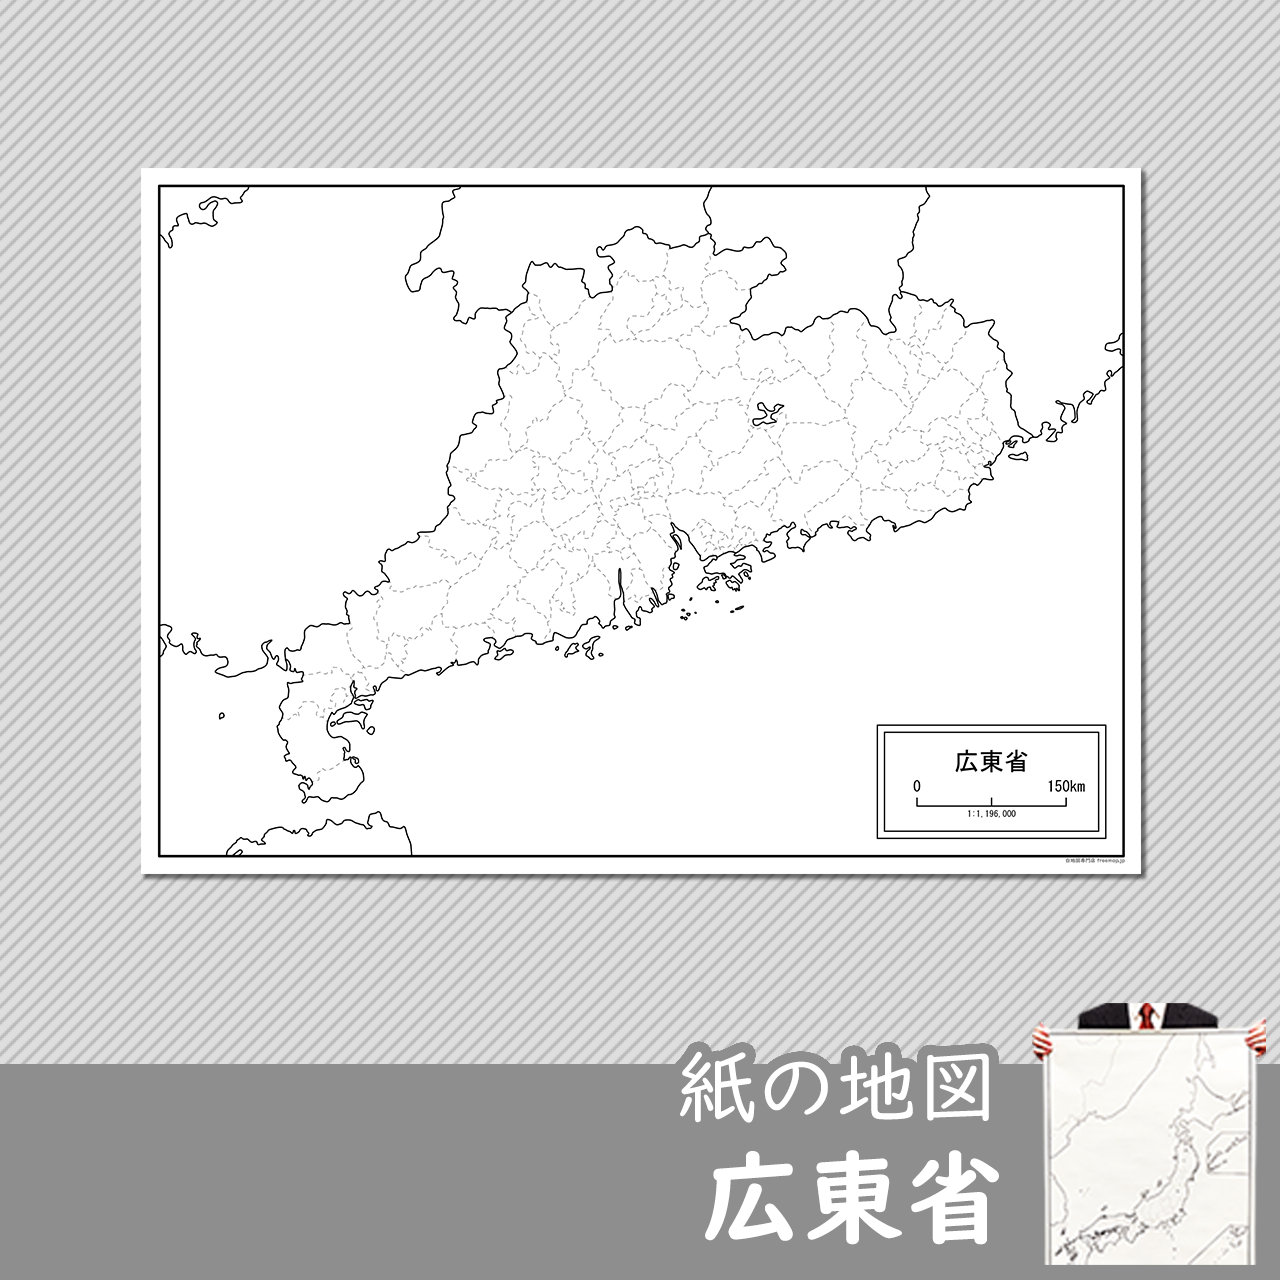 広東省（かんとんしょう）の紙の白地図のサムネイル